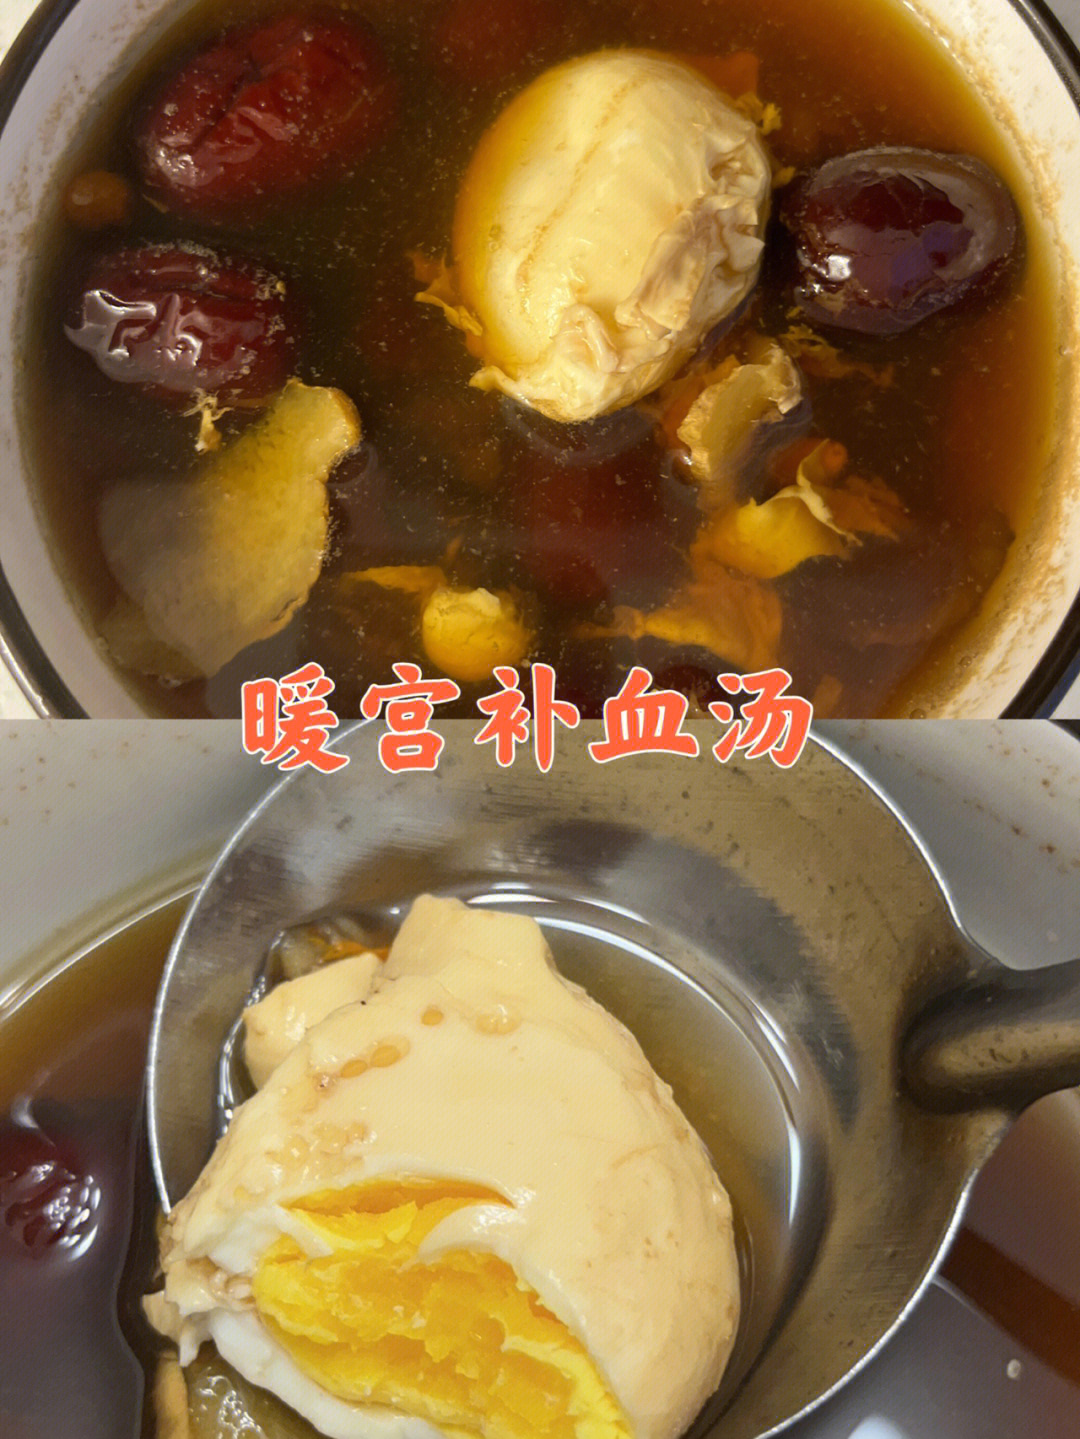 苓桂甘枣汤现代用法图片